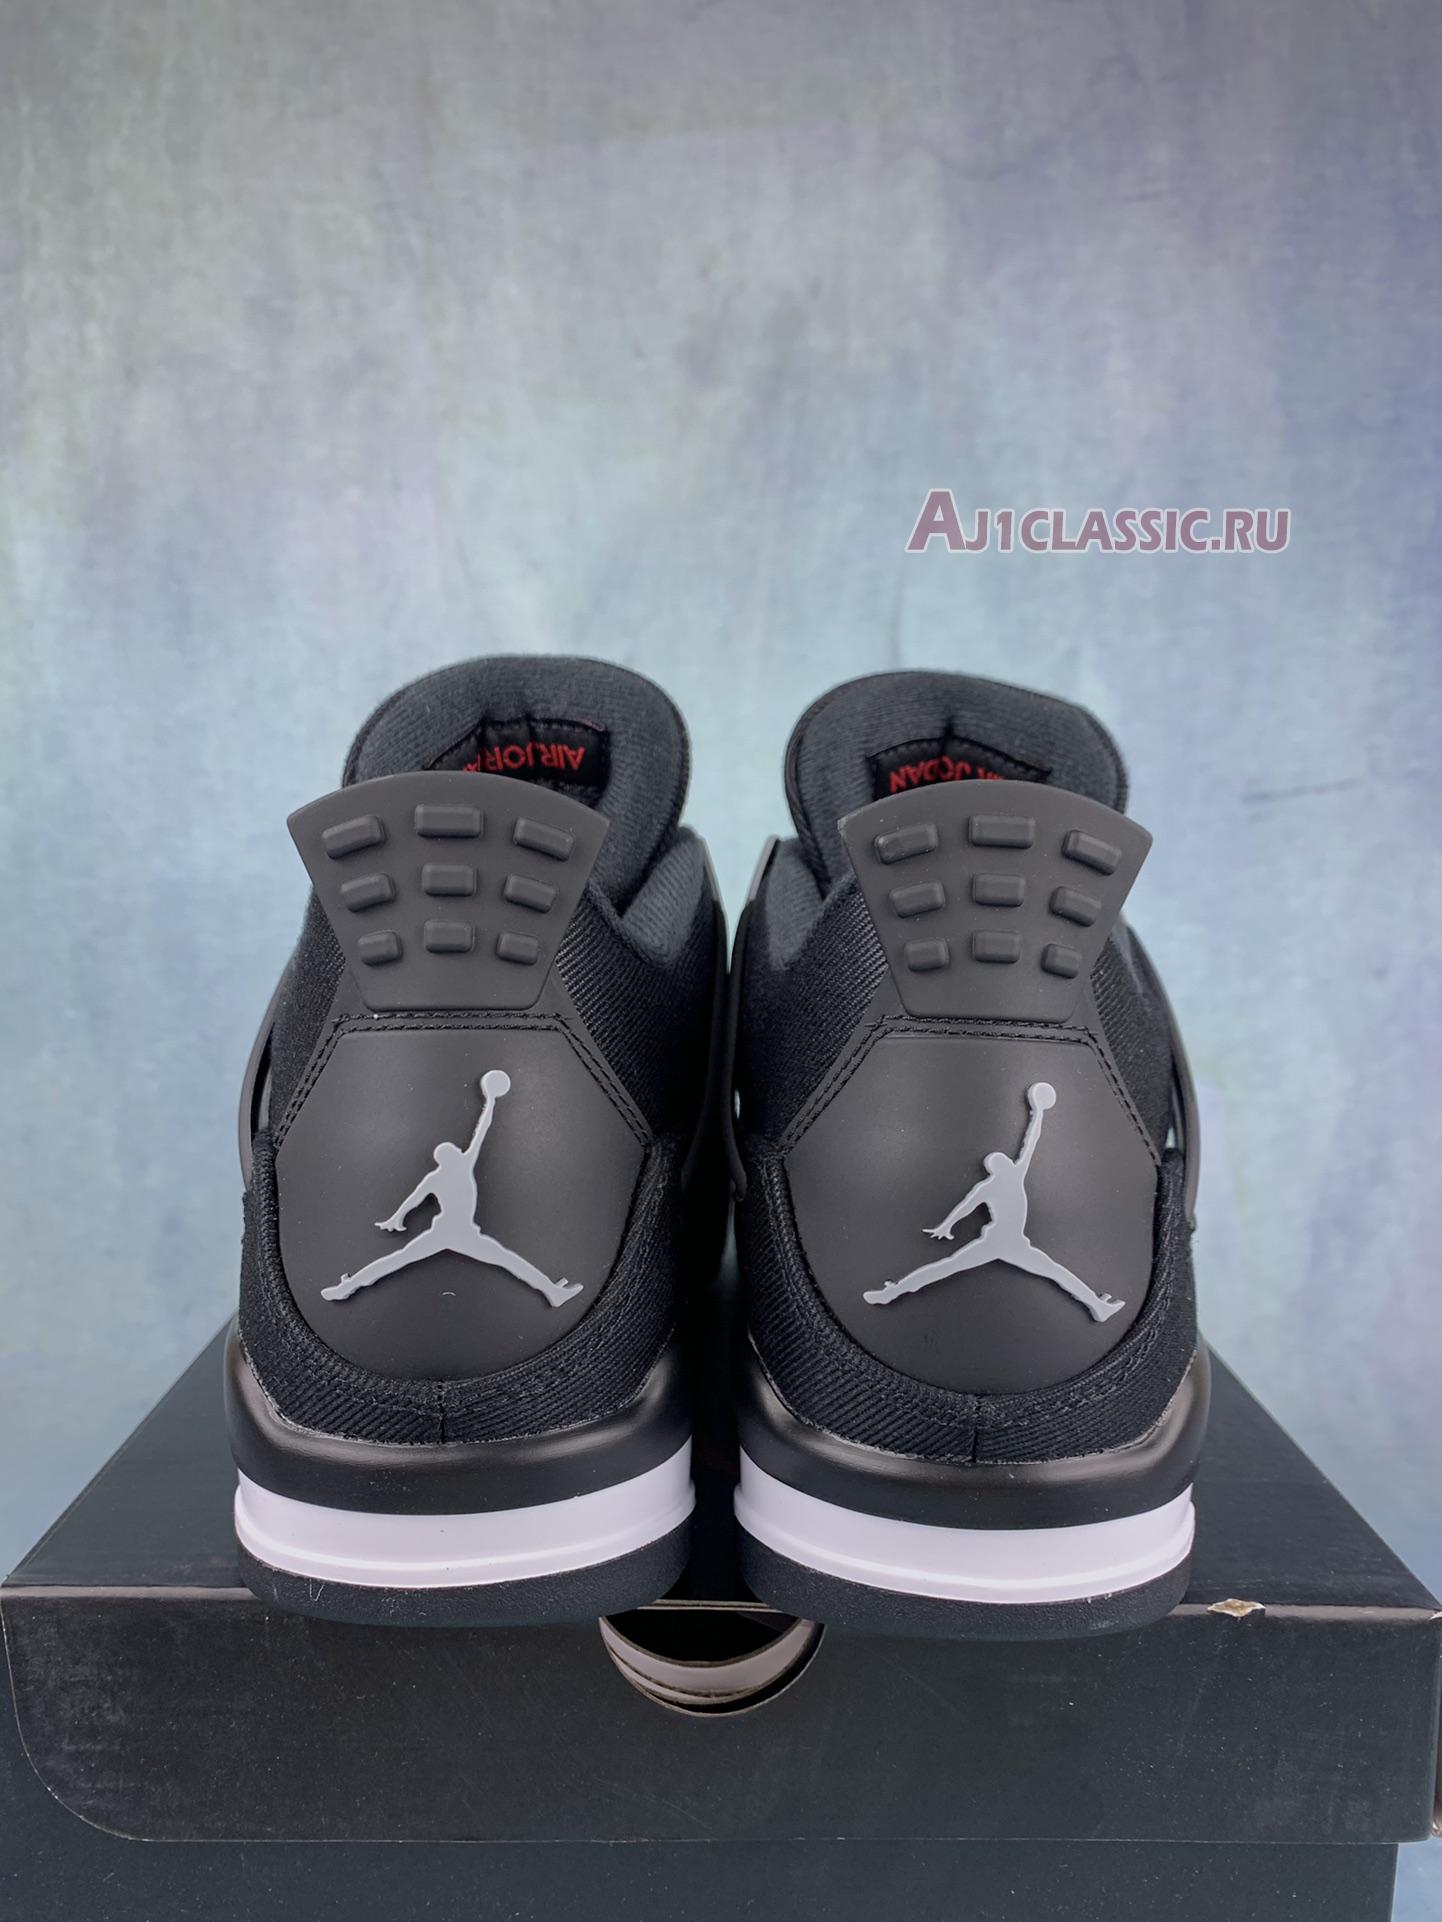 Air Jordan 4 "Black Canvas" DH7138-006-2